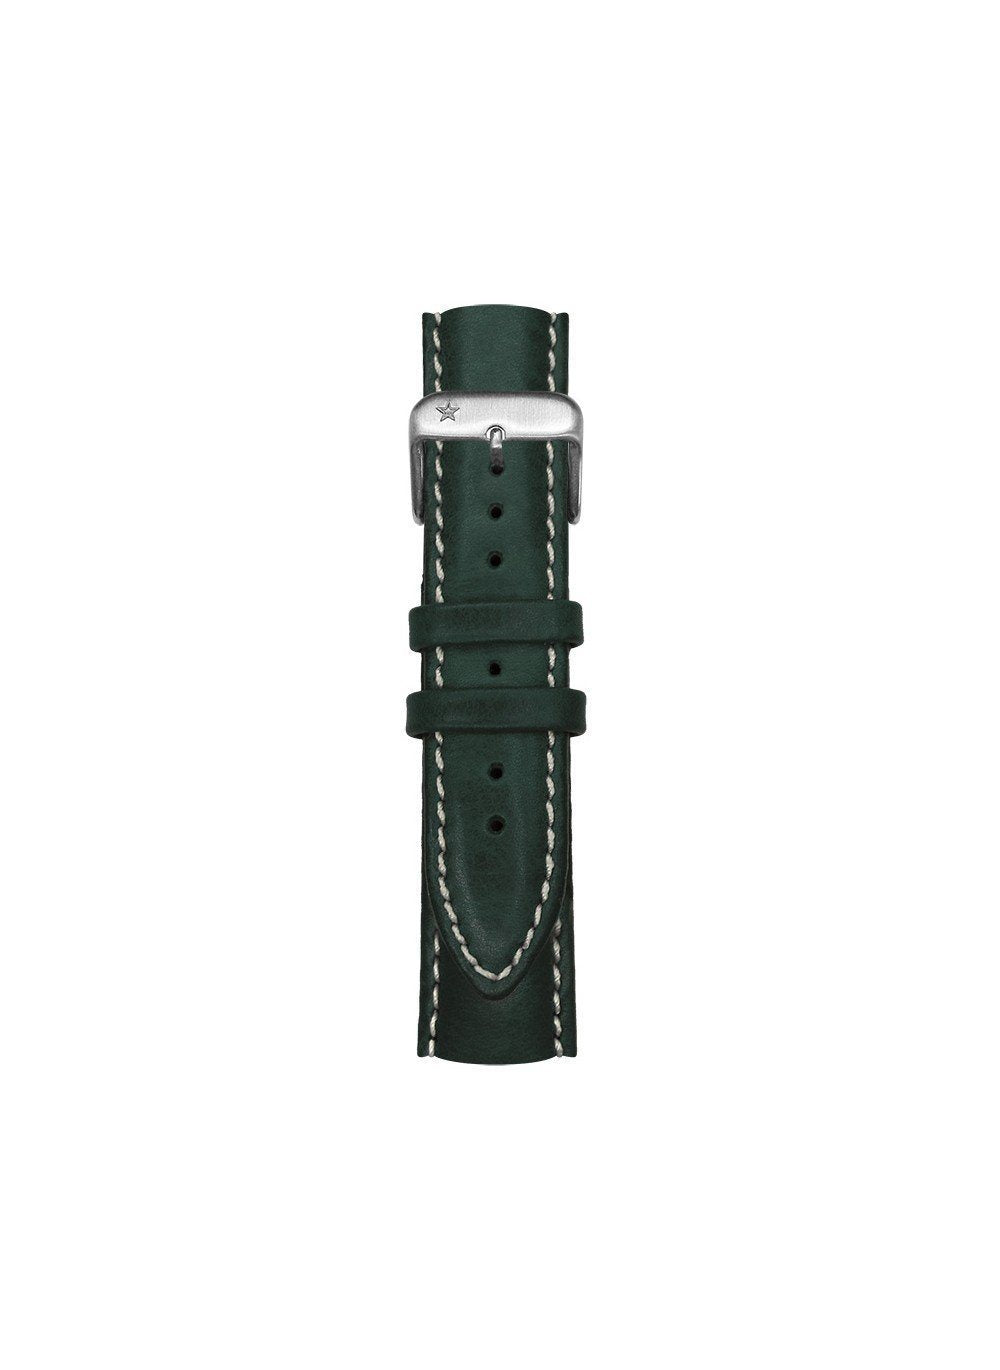 Bracelet classique cuir noir surpiqué interchangeable 20mm - oxygen watch